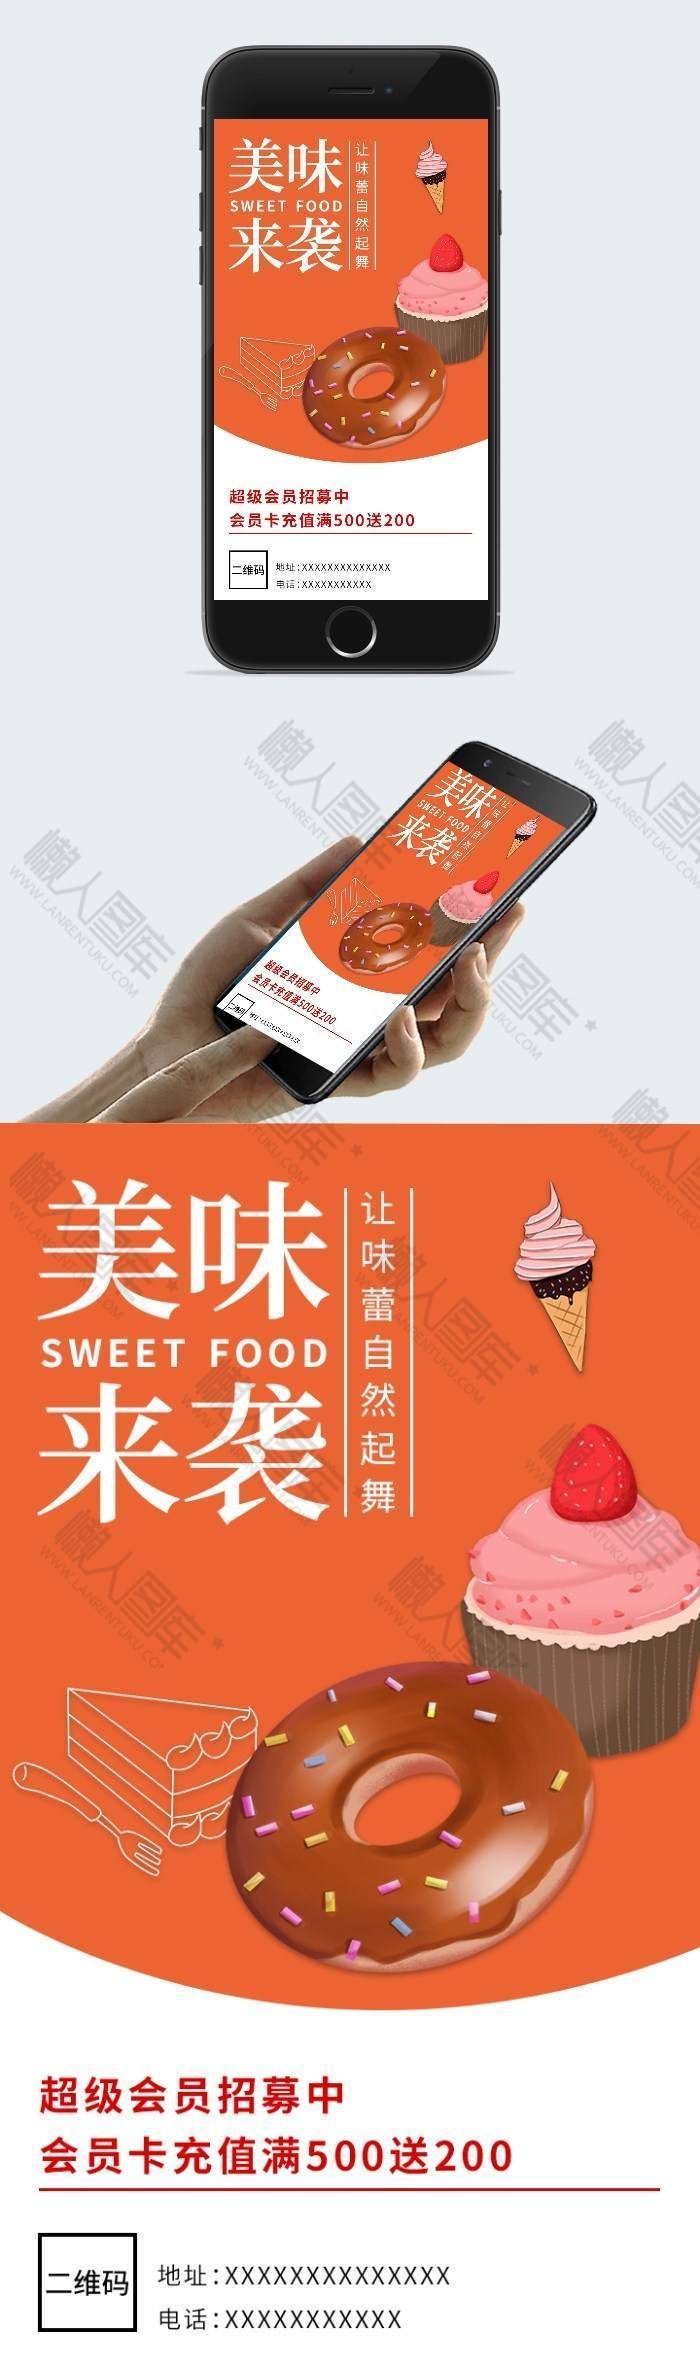 美味甜品店会员充值手机海报